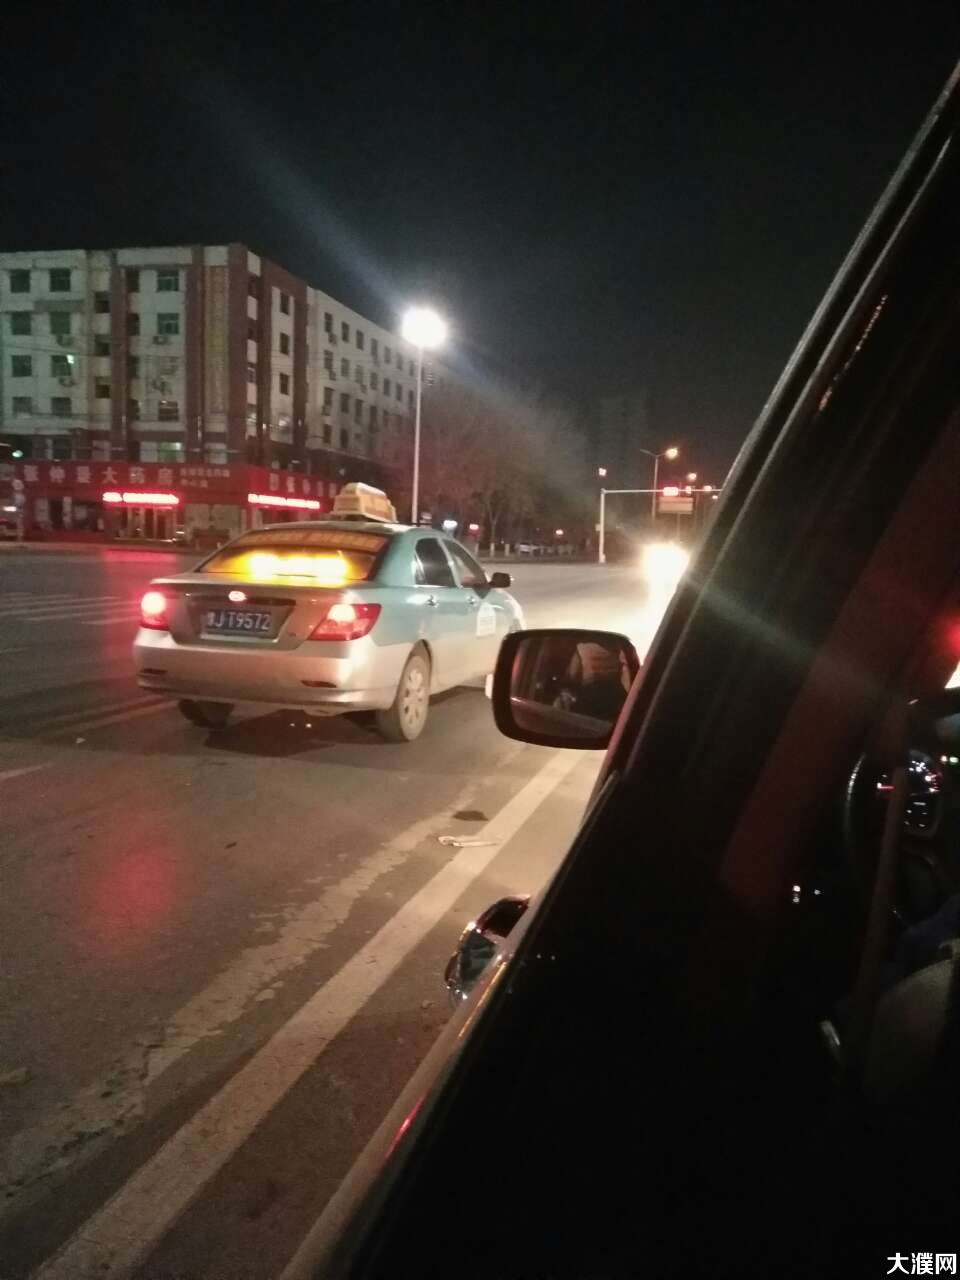 出租车晚上马路中间停车